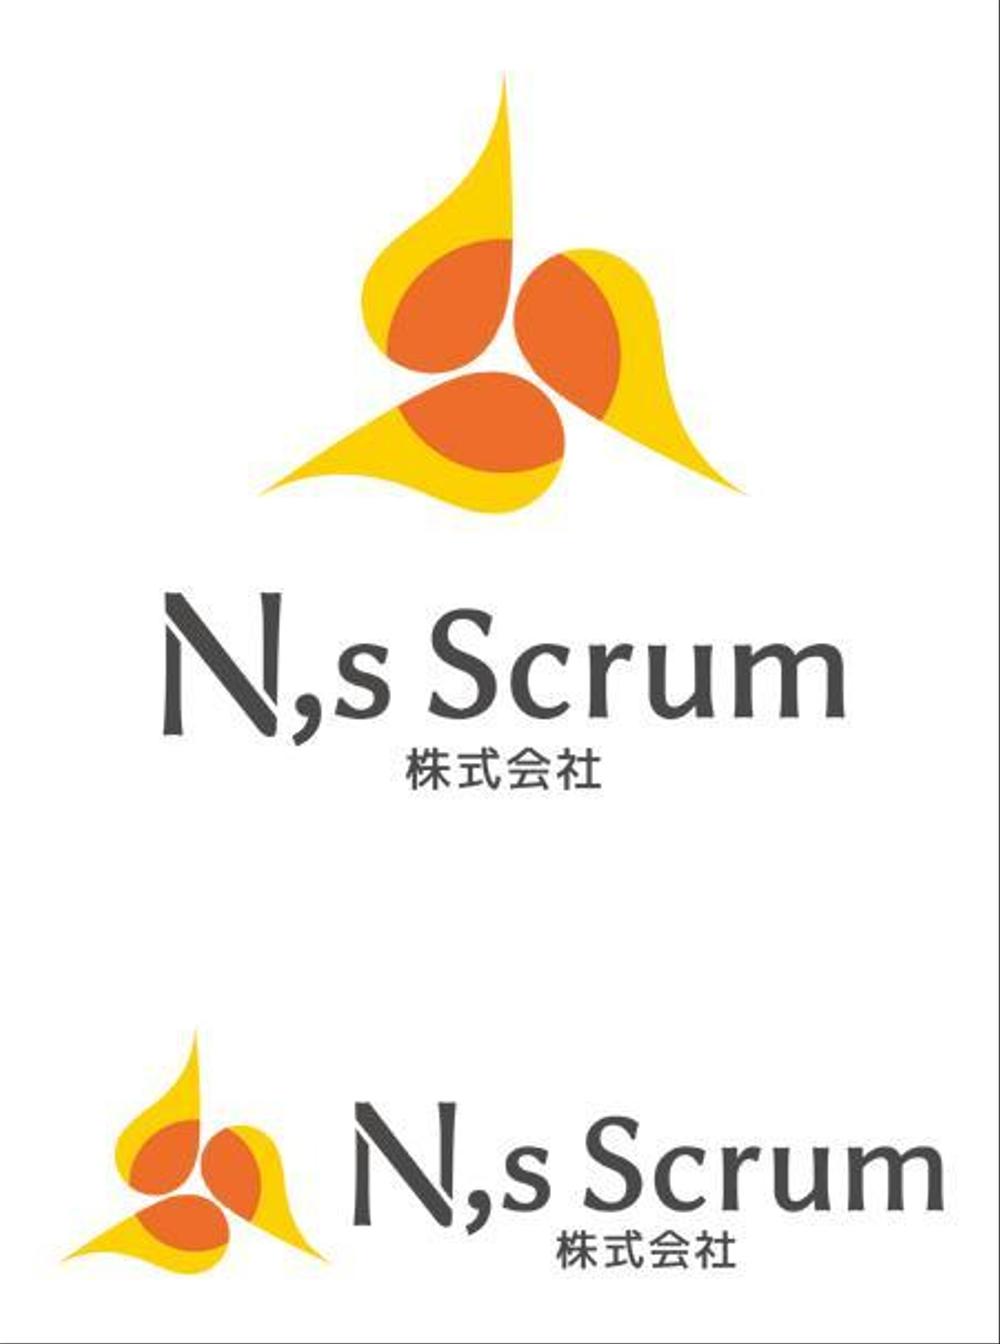 N,s Scrum -2k.JPG